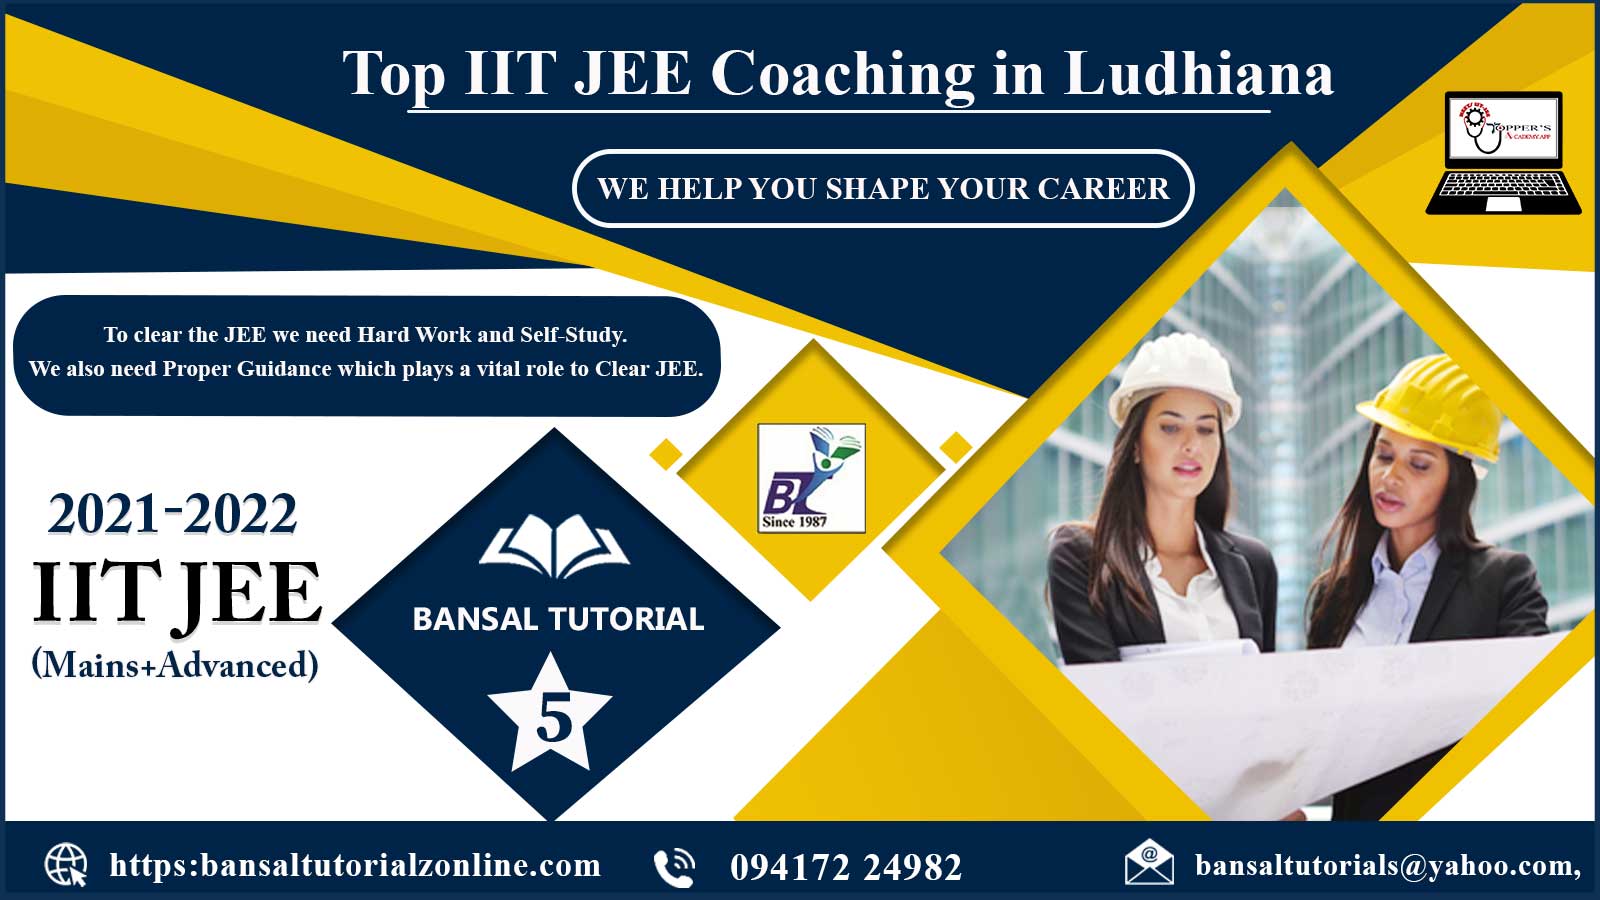 Bansal Tutorial’z IIT JEE Coaching in Ludhiana